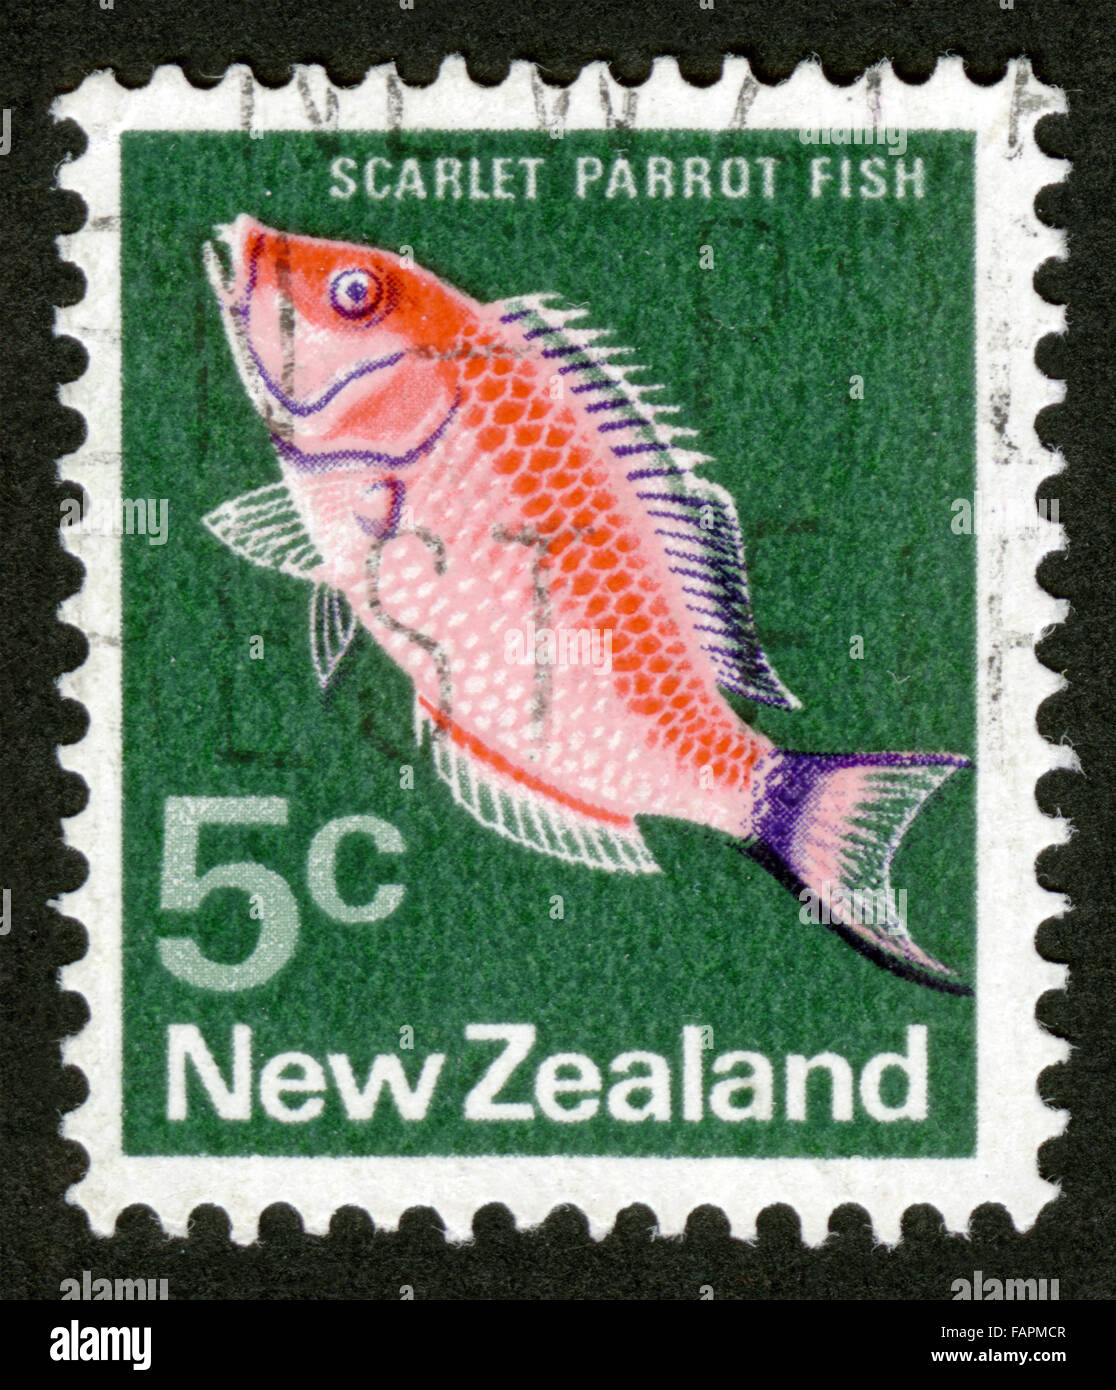 La NOUVELLE ZELANDE, poisson, poisson perroquet écarlate, mark post, stamp, post stamp Banque D'Images